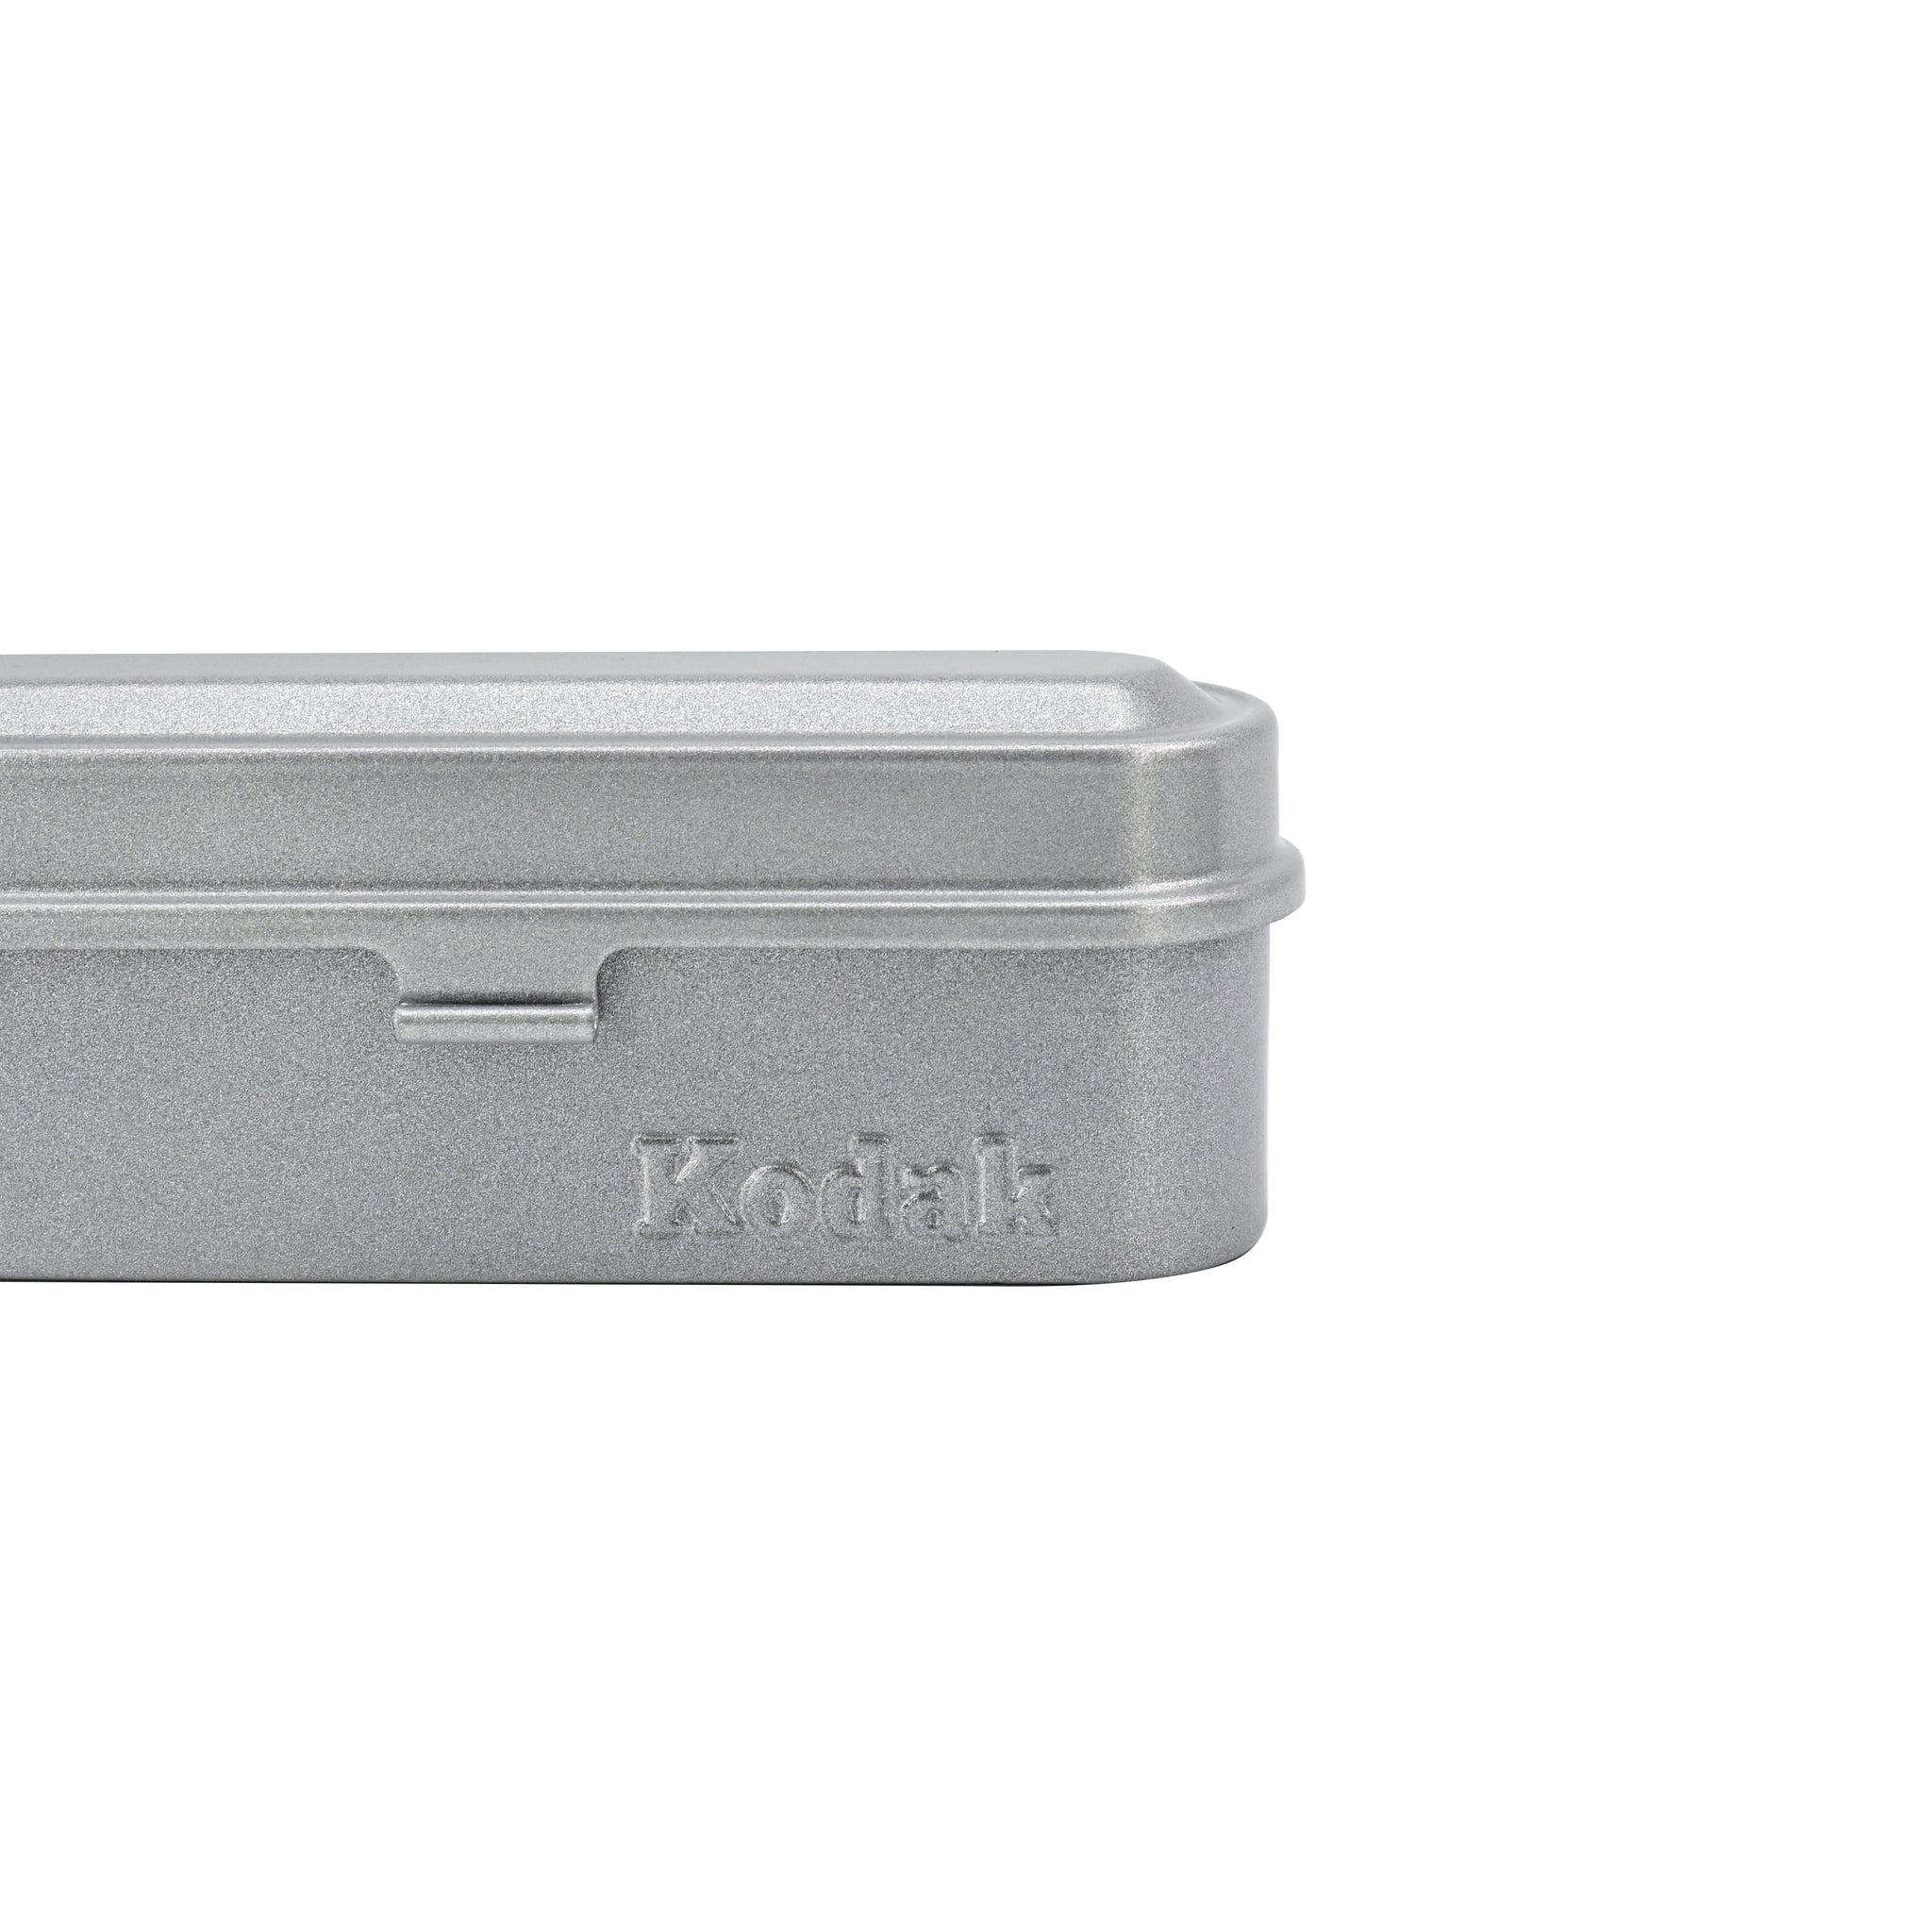 Kodak Steel 35mm Film Case Silver/Silver - Holds 5 Rolls of Film